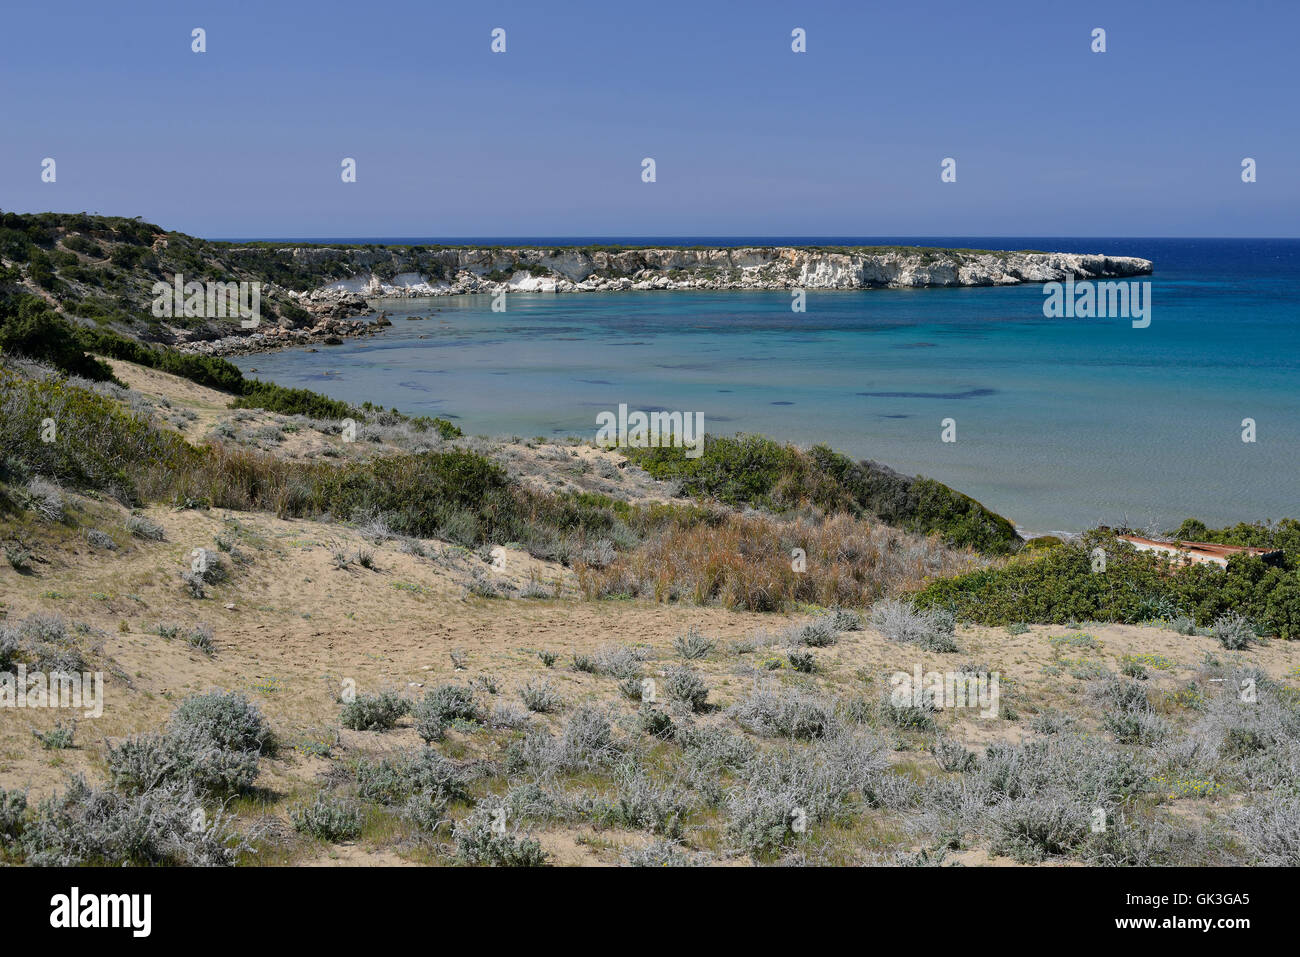 La baie de Lara & Craie Pointe, Akamas, Chypre Banque D'Images